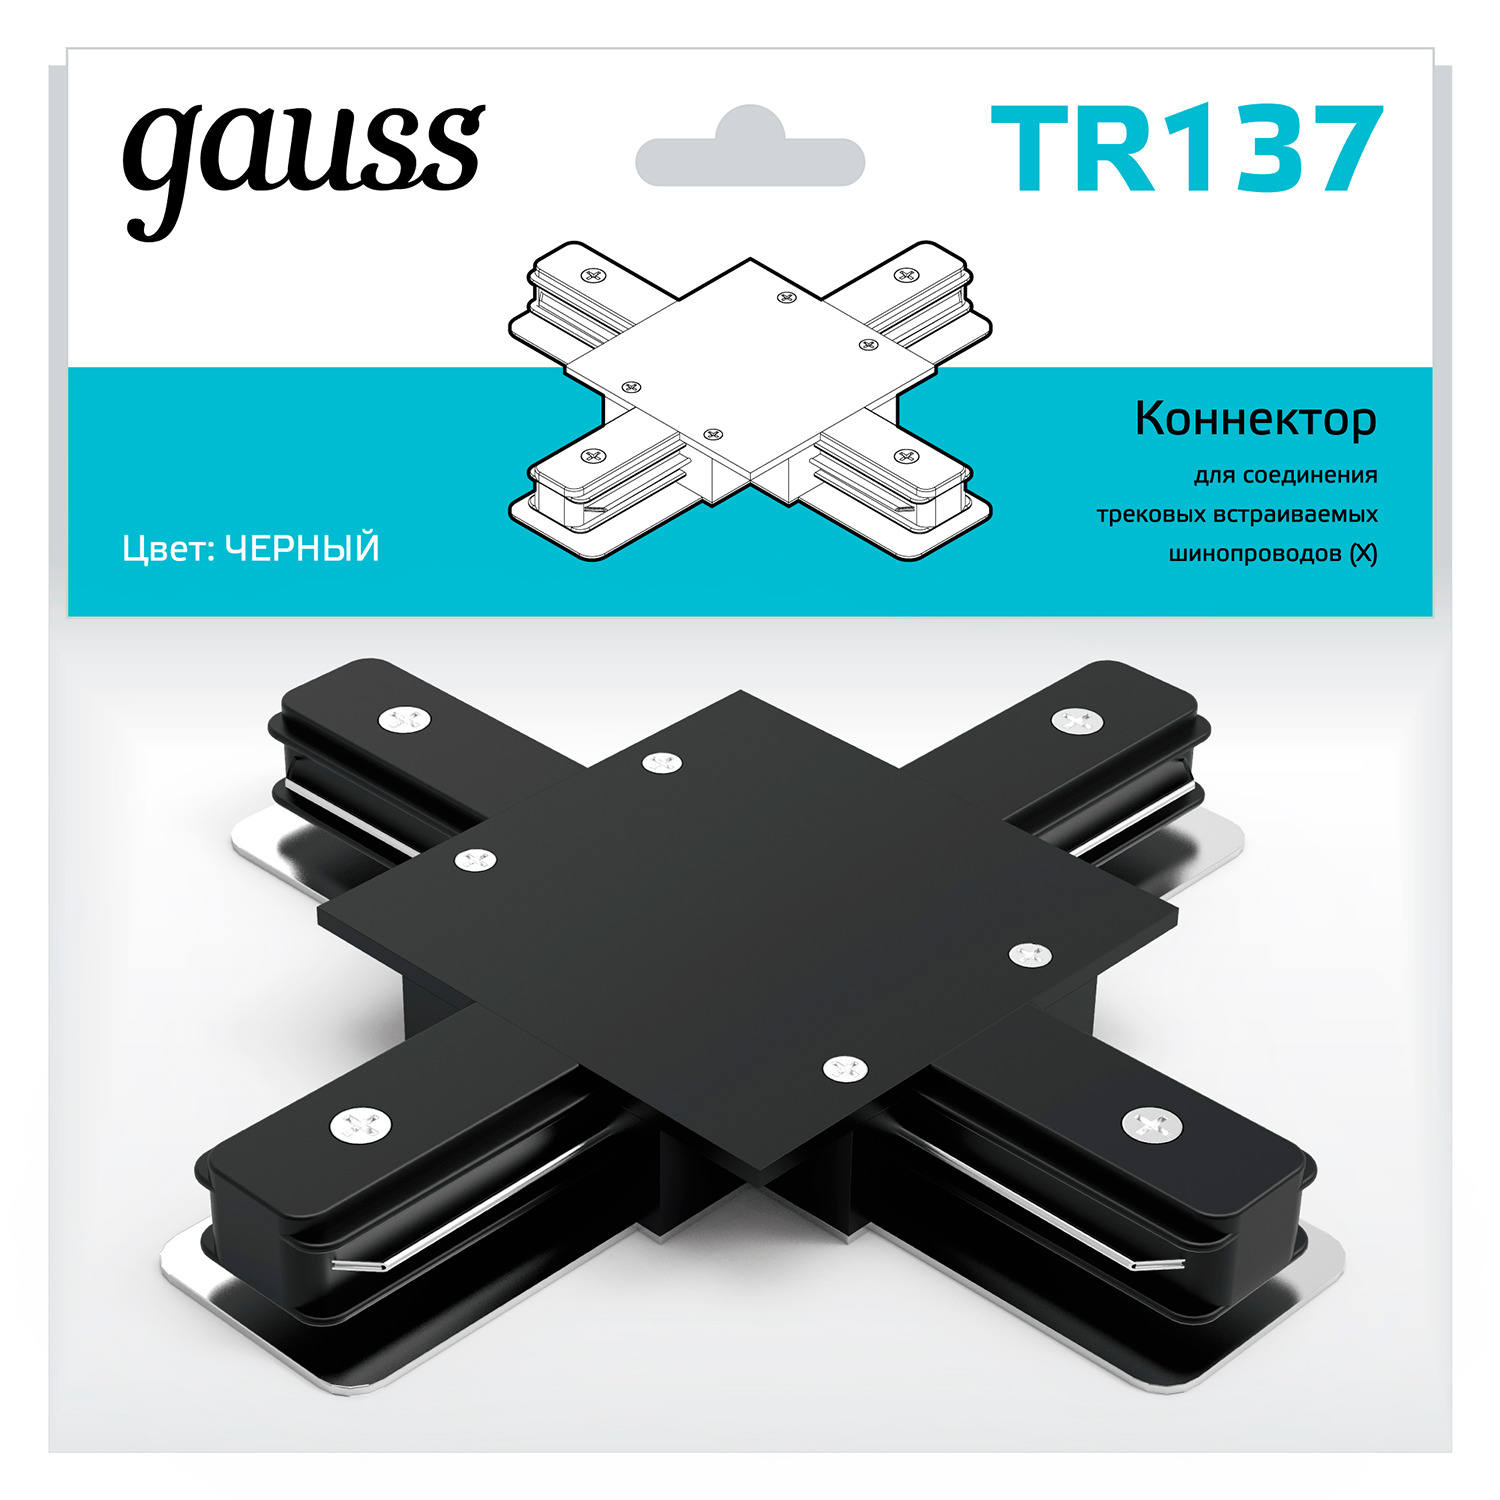 gauss коннектор для встраиваемых трековых шинопроводов черный tr137 50 шт Коннектор Gauss для встраиваемых трековых шинопроводов (+) черный